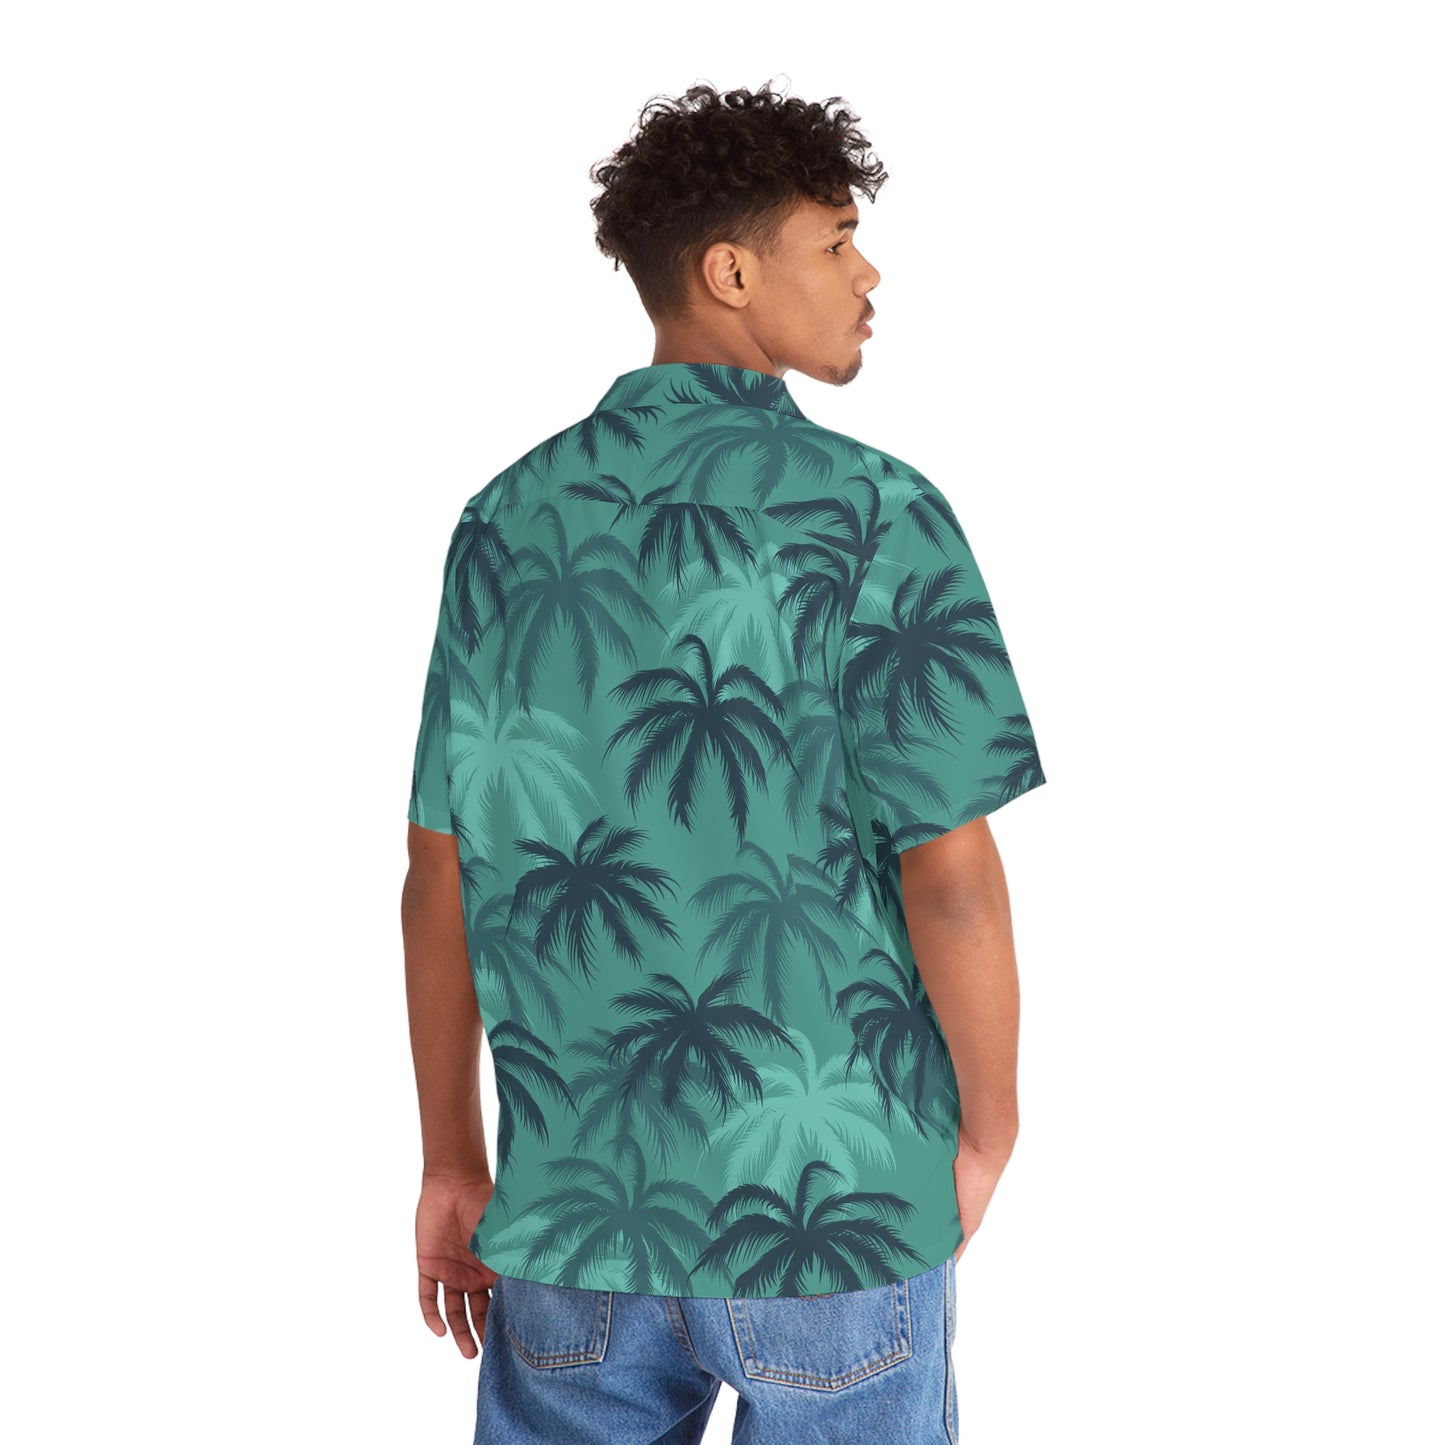 Tommy V HI RES "Hawaiian" shirt